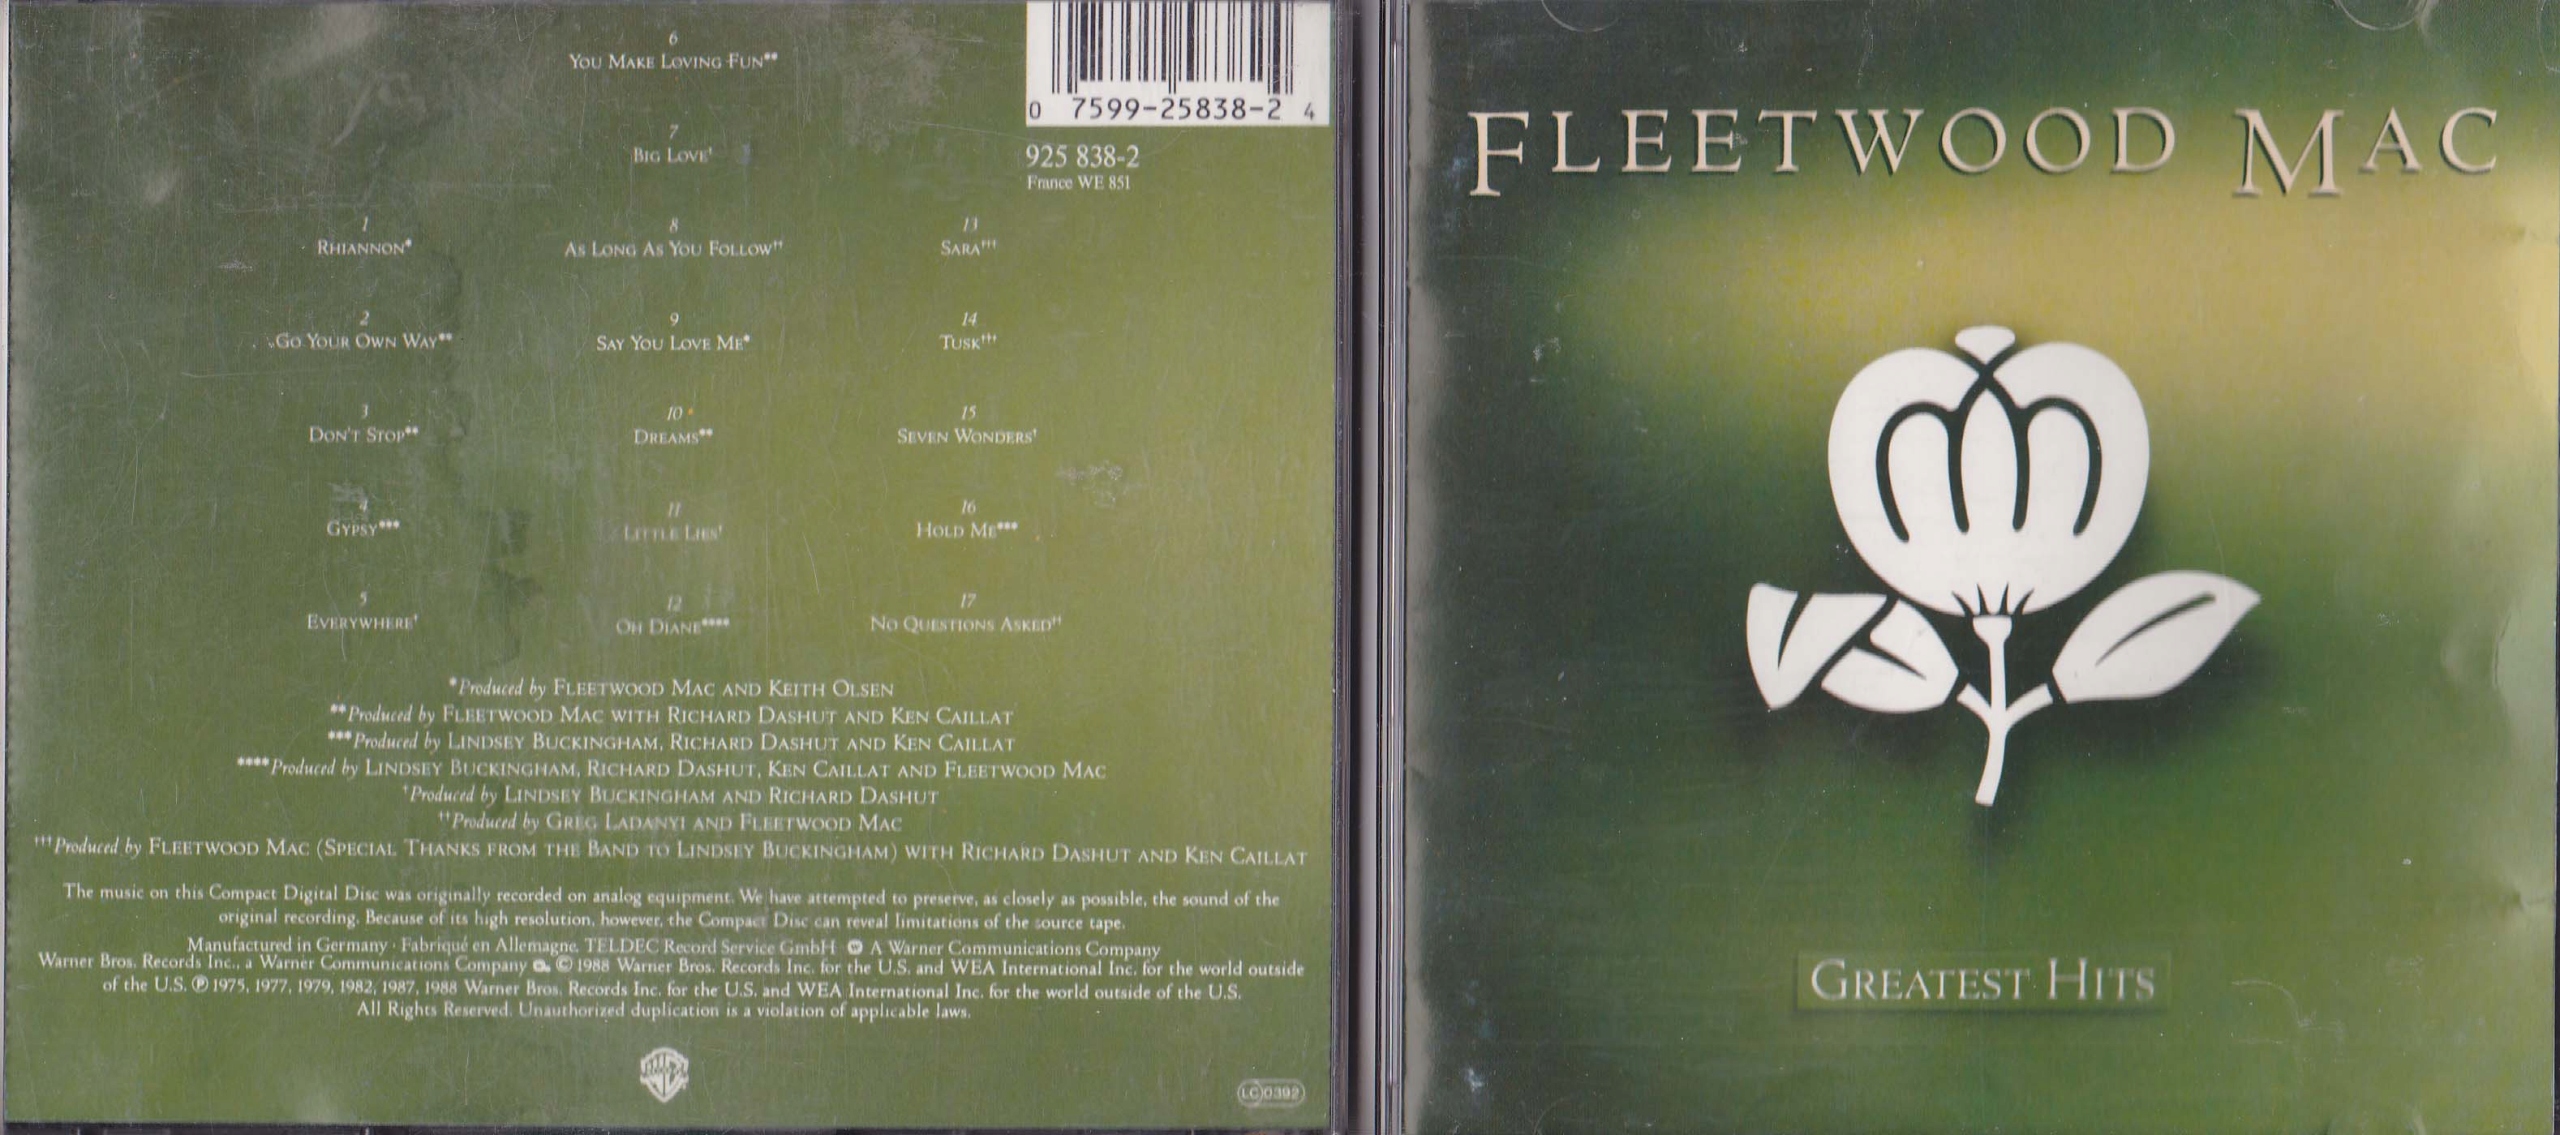 FLEETWOOD MAC - Greatest Hits